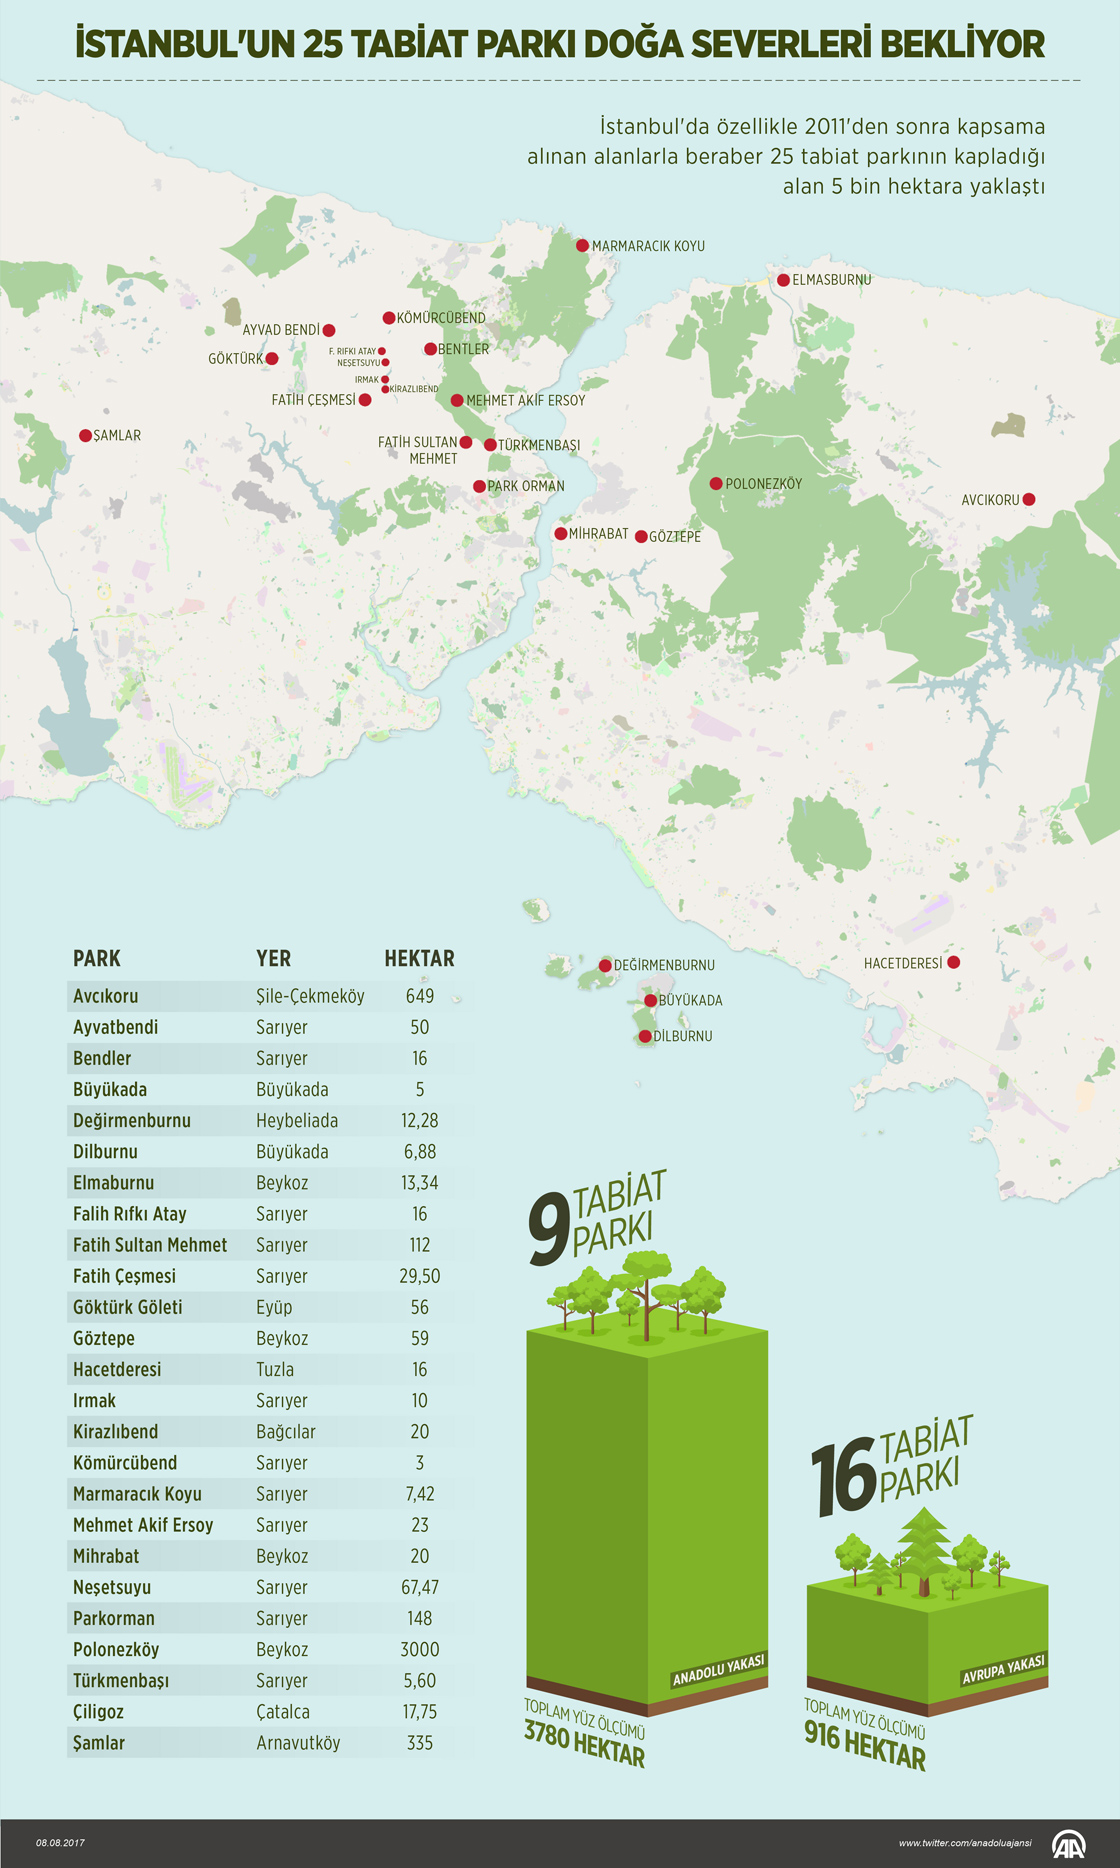 İstanbul'un 25 tabiat parkı doğaseverleri bekliyor 